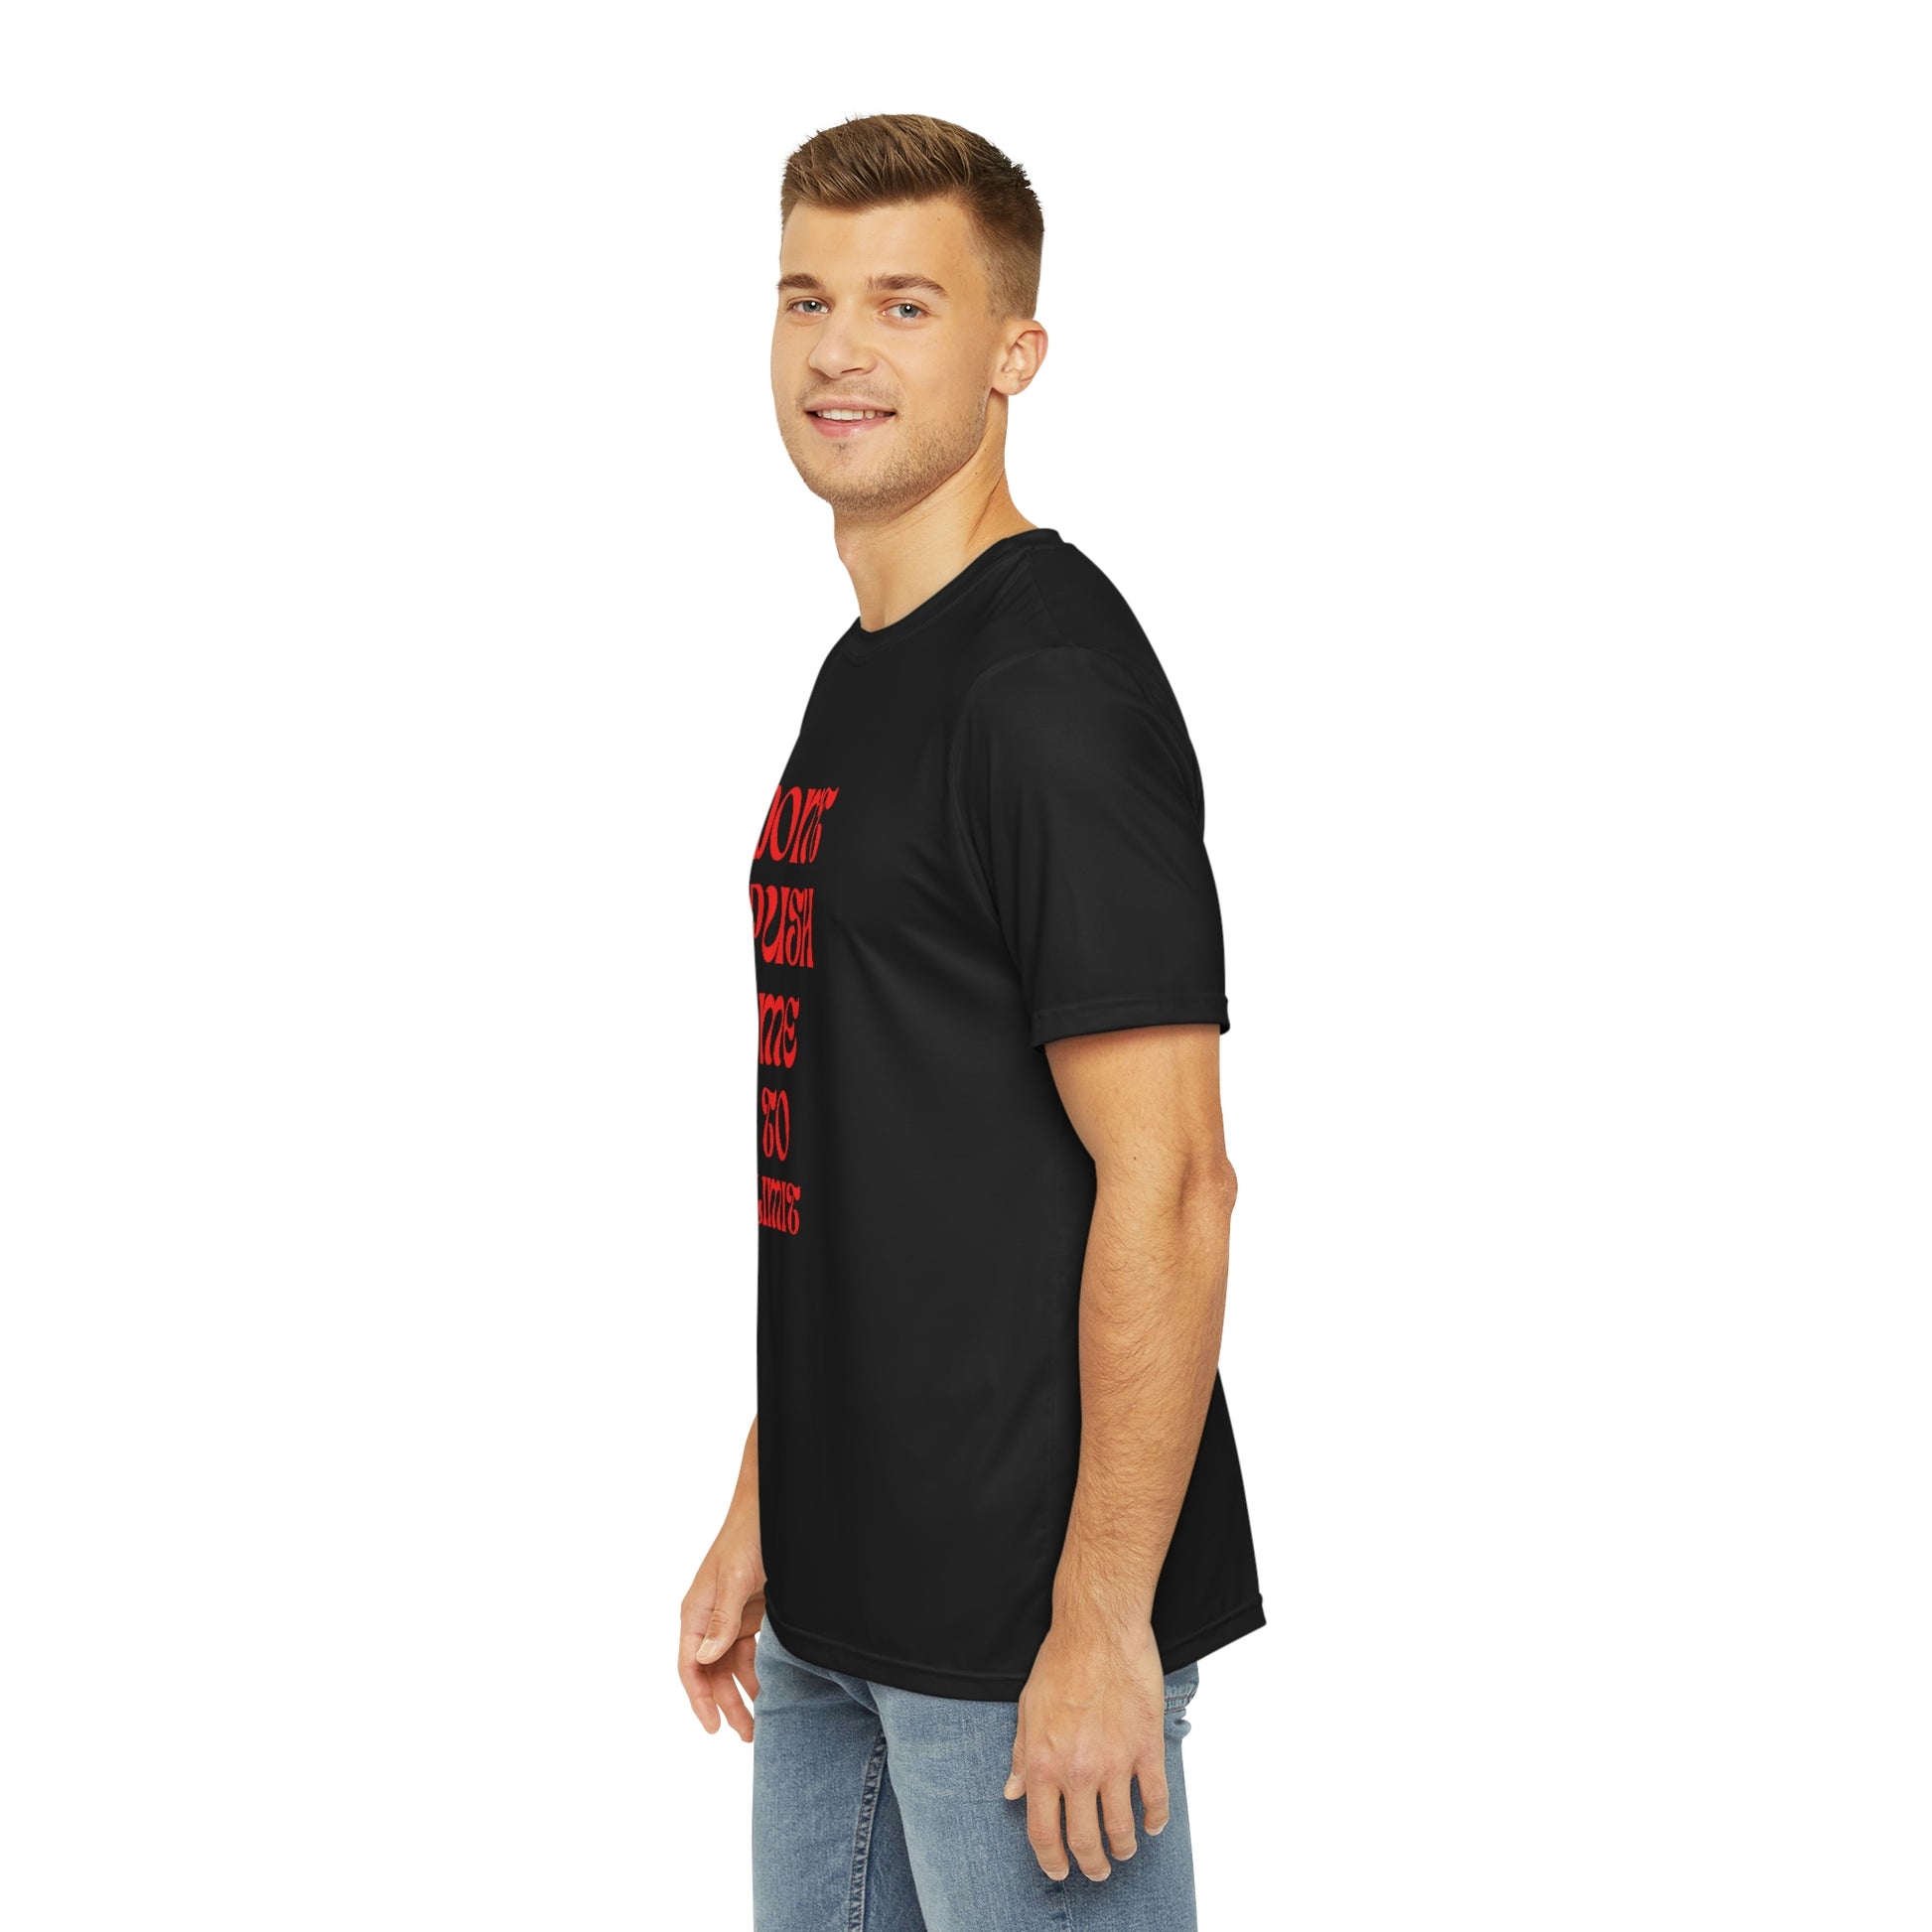 Unisex T-shirt - Official primitive store